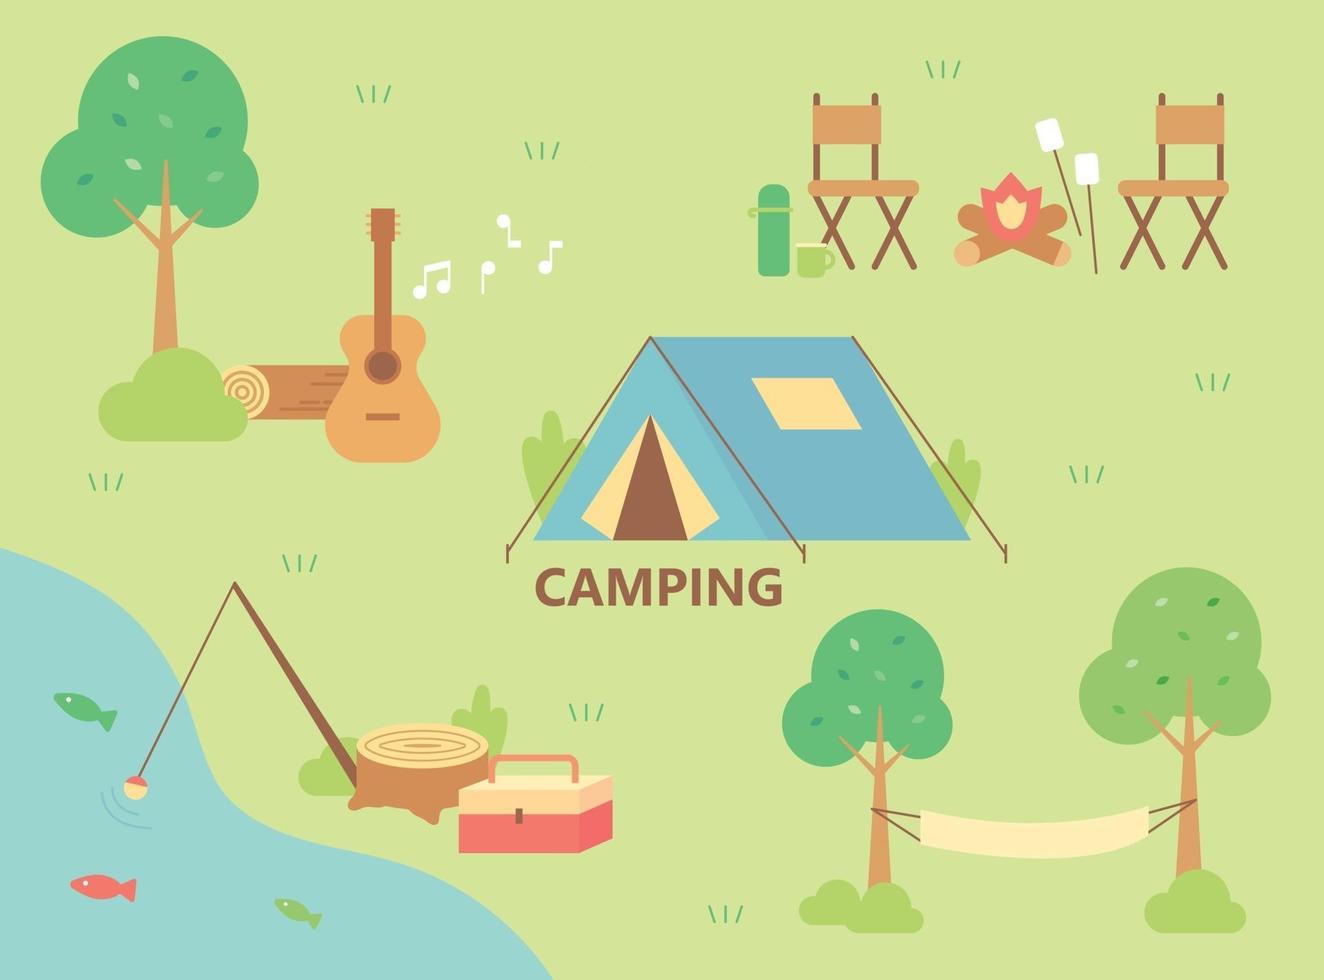 campeggio fluviale. le vite del campeggio sono disposte intorno alla tenda. vettore